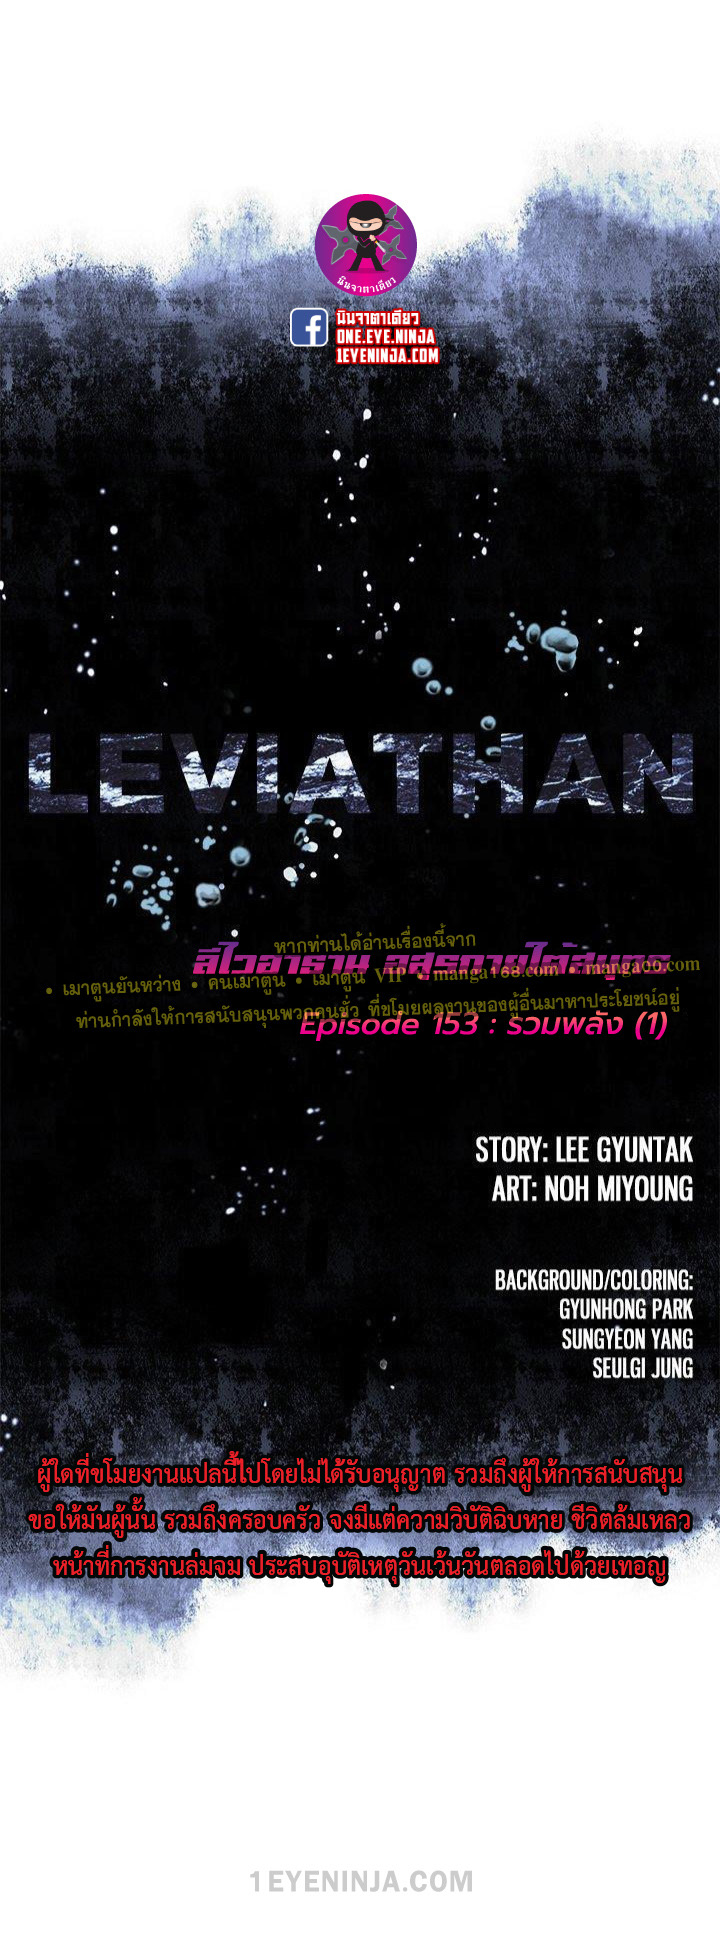 leviathan155 04